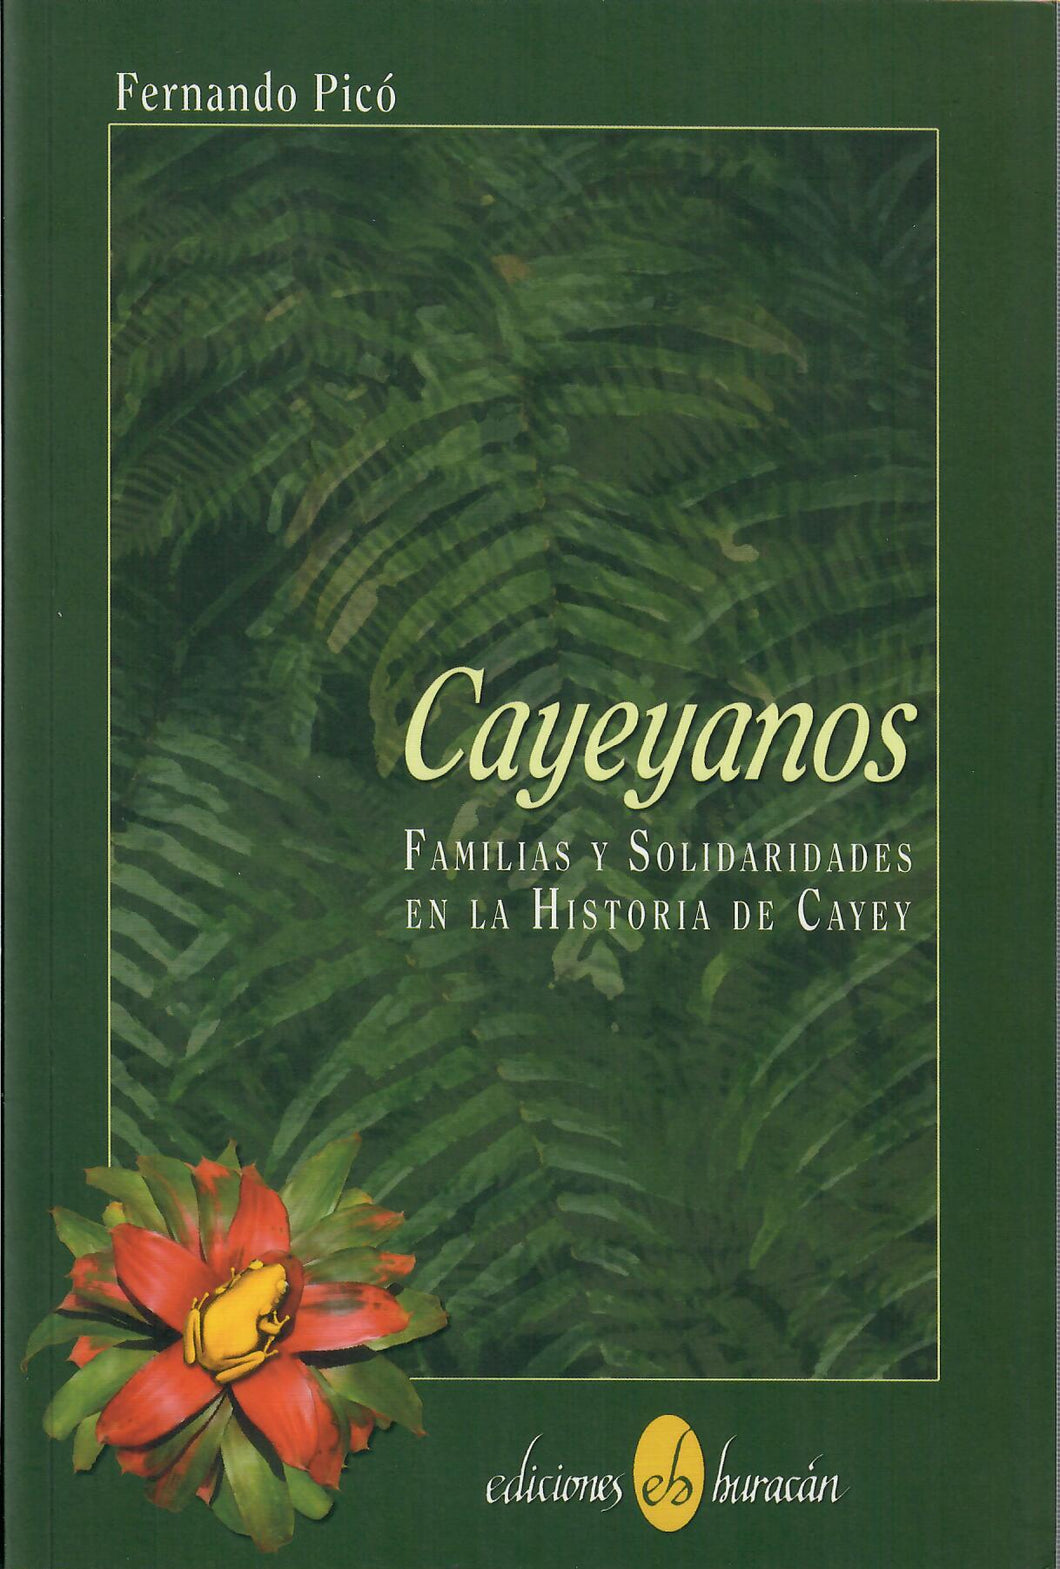 CAYEYANOS FAMILIAS Y SOLIDARIDADES EN LA HISTORIA DE CAYEY - Fernando Picó